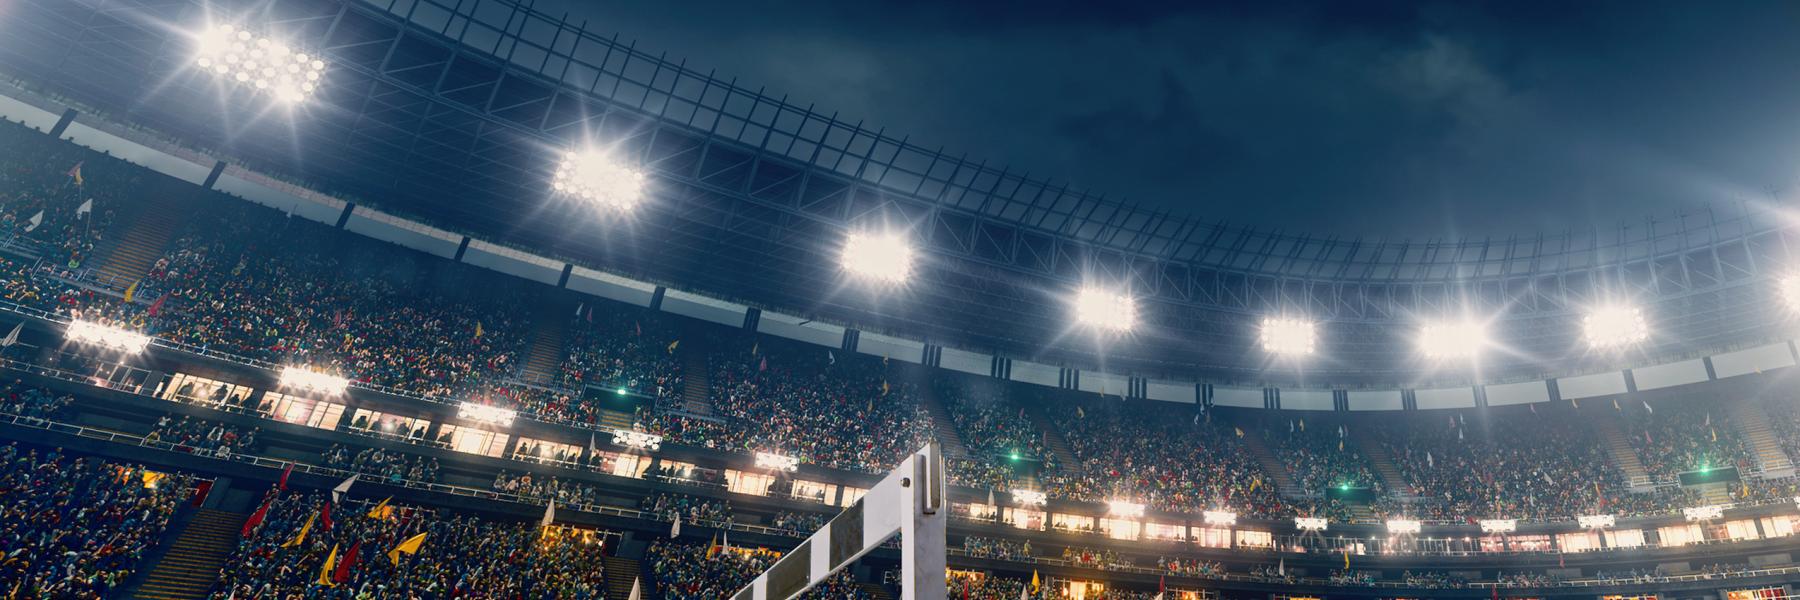 Stadium with bright lighting